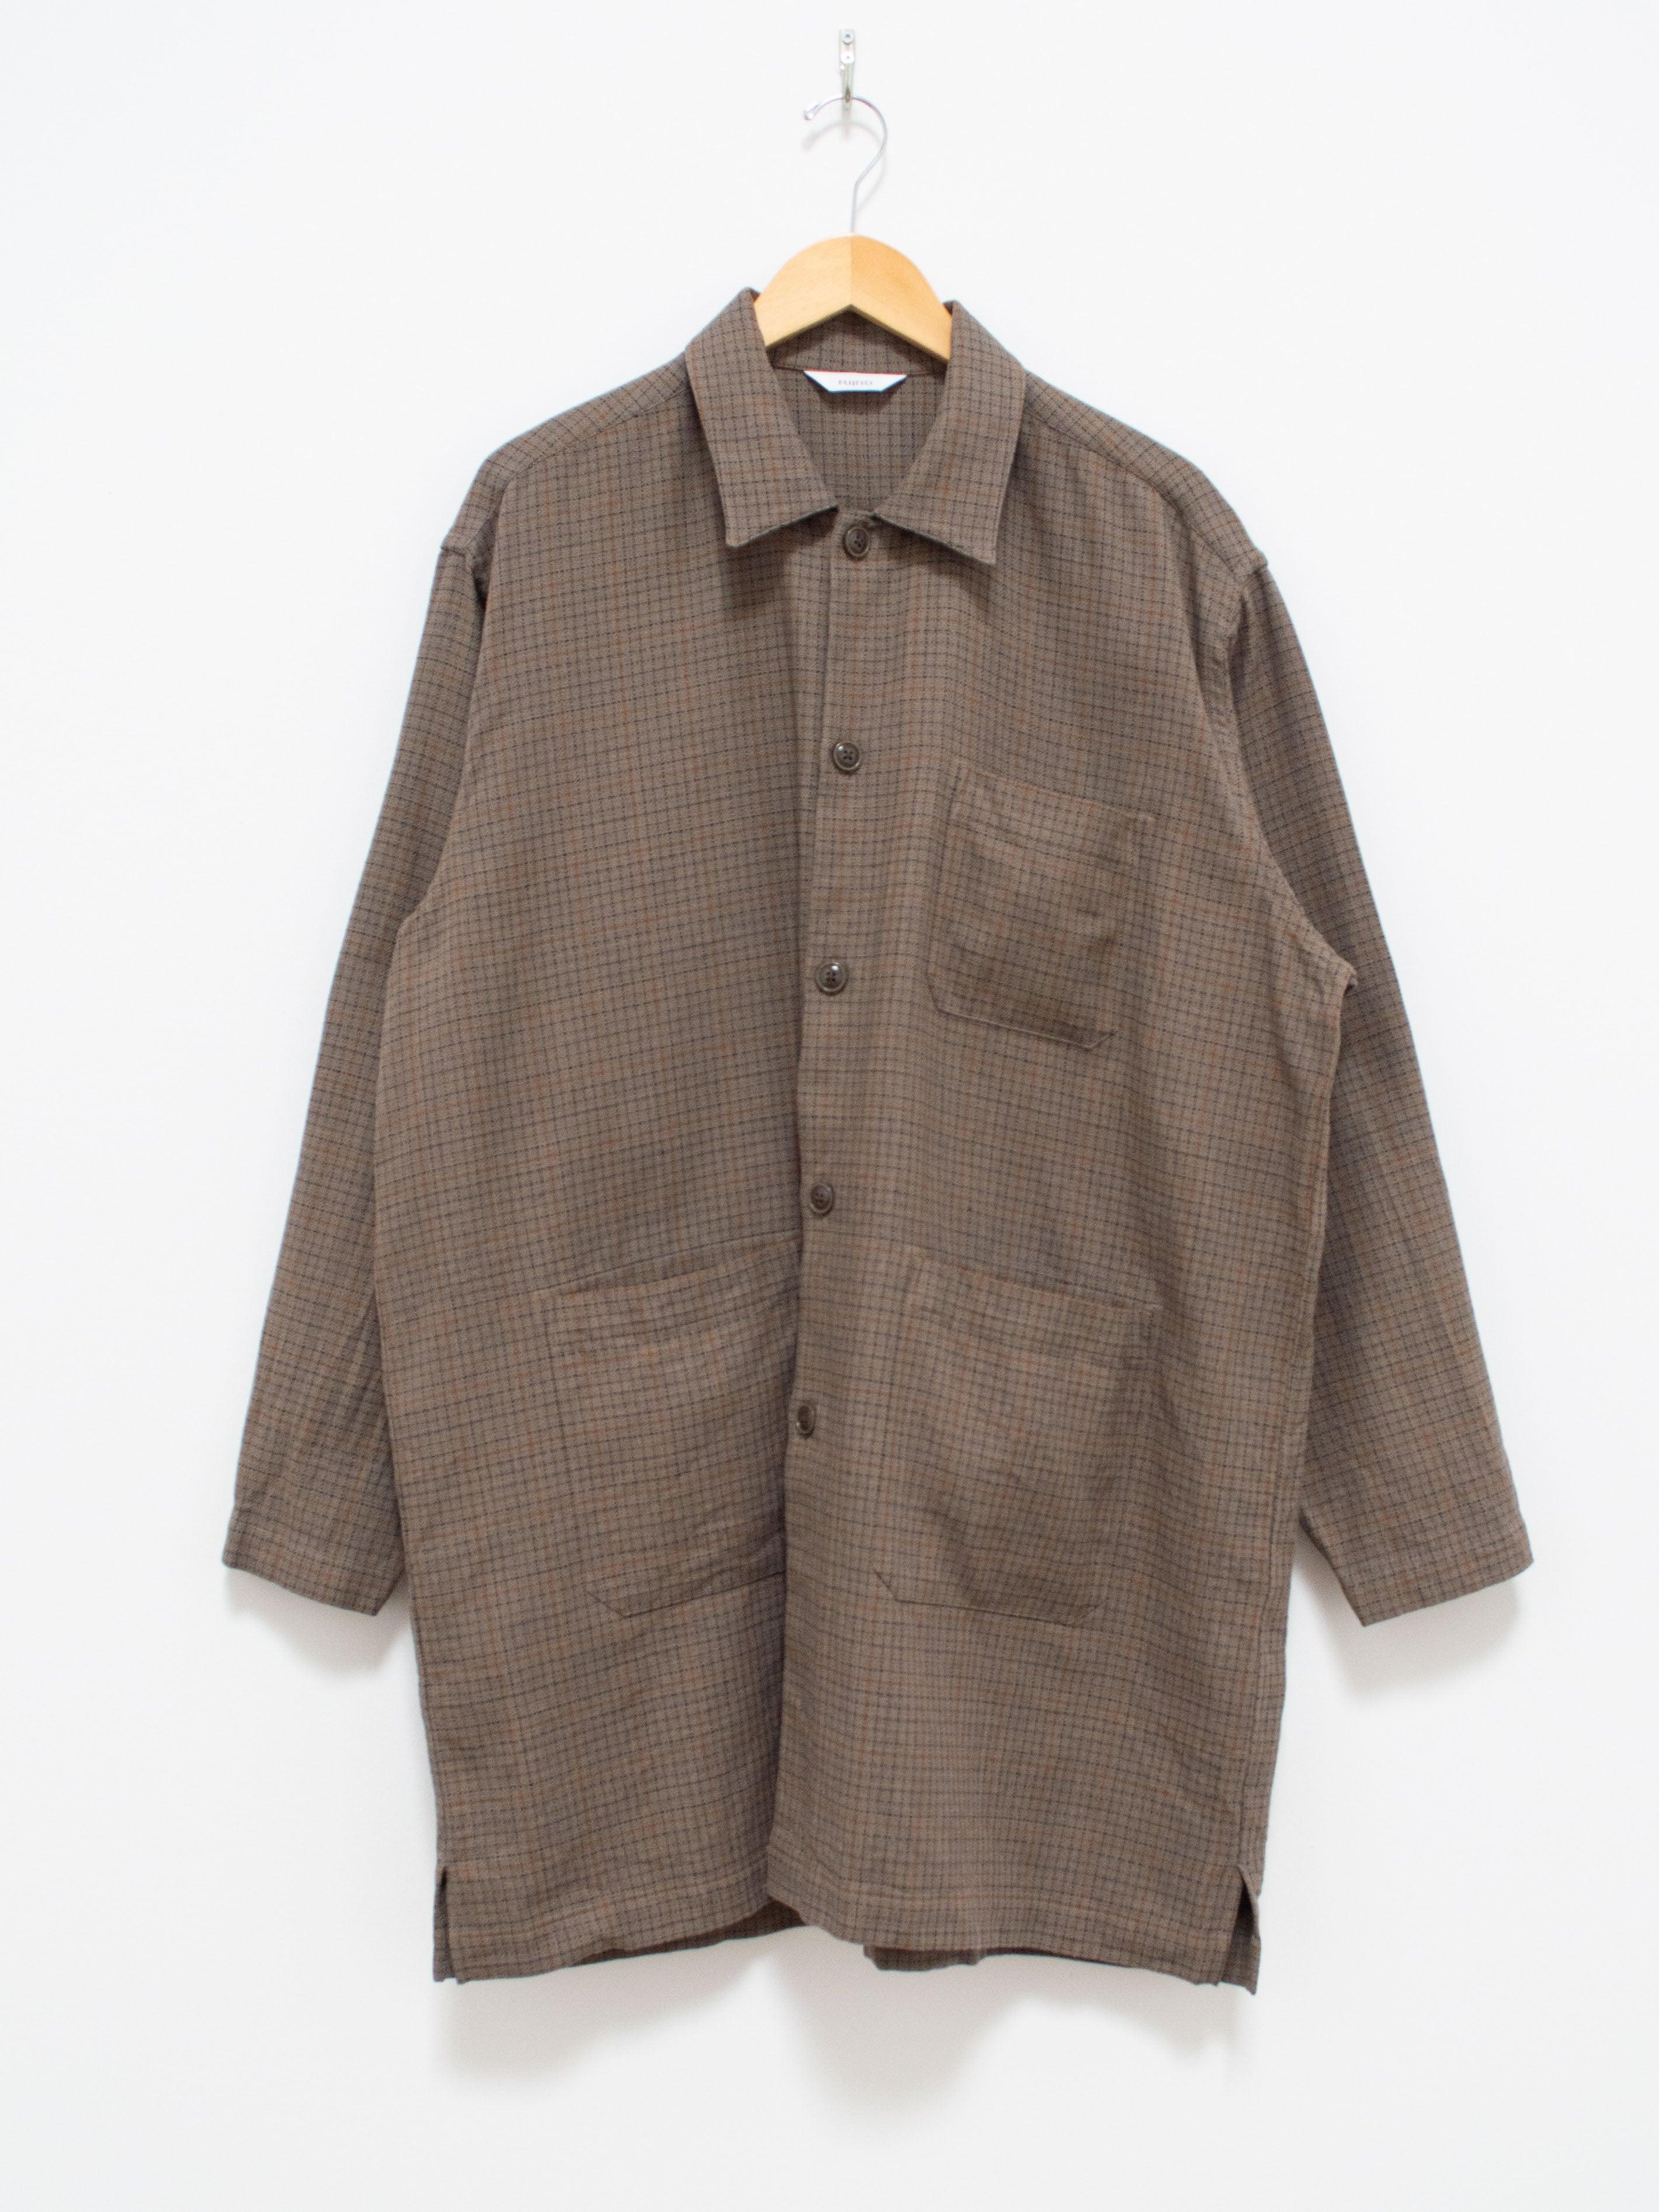 Shirt Coat - Herringbone Gray Check